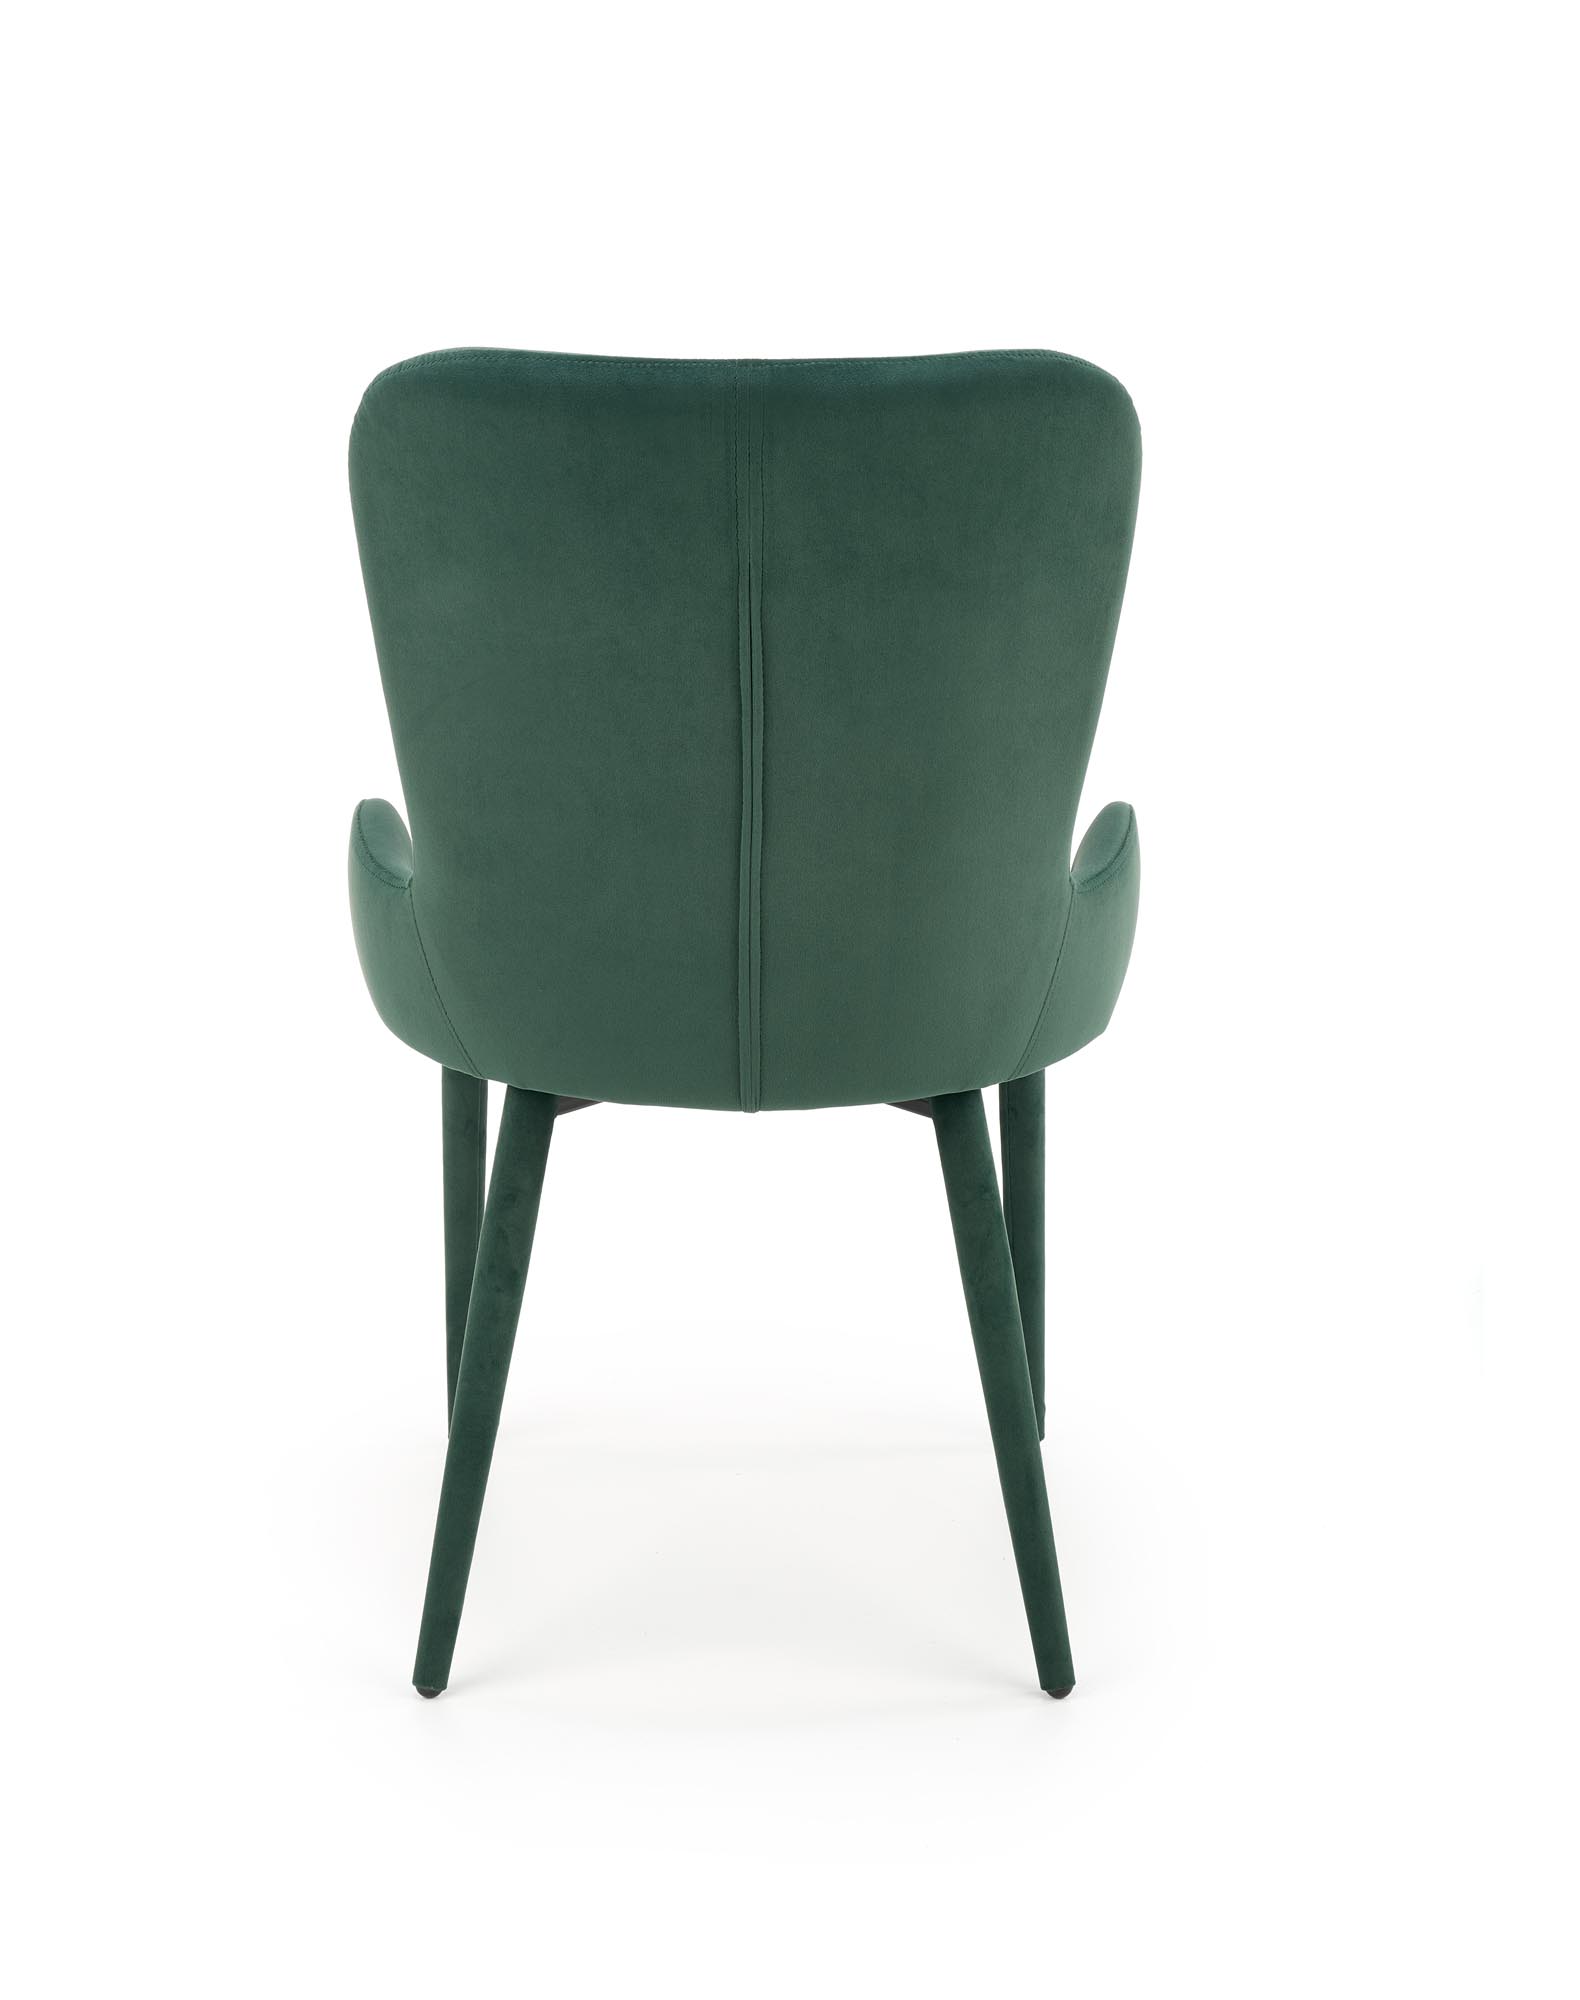 K425 krzesło ciemny zielony k425 krzesło ciemny zielony